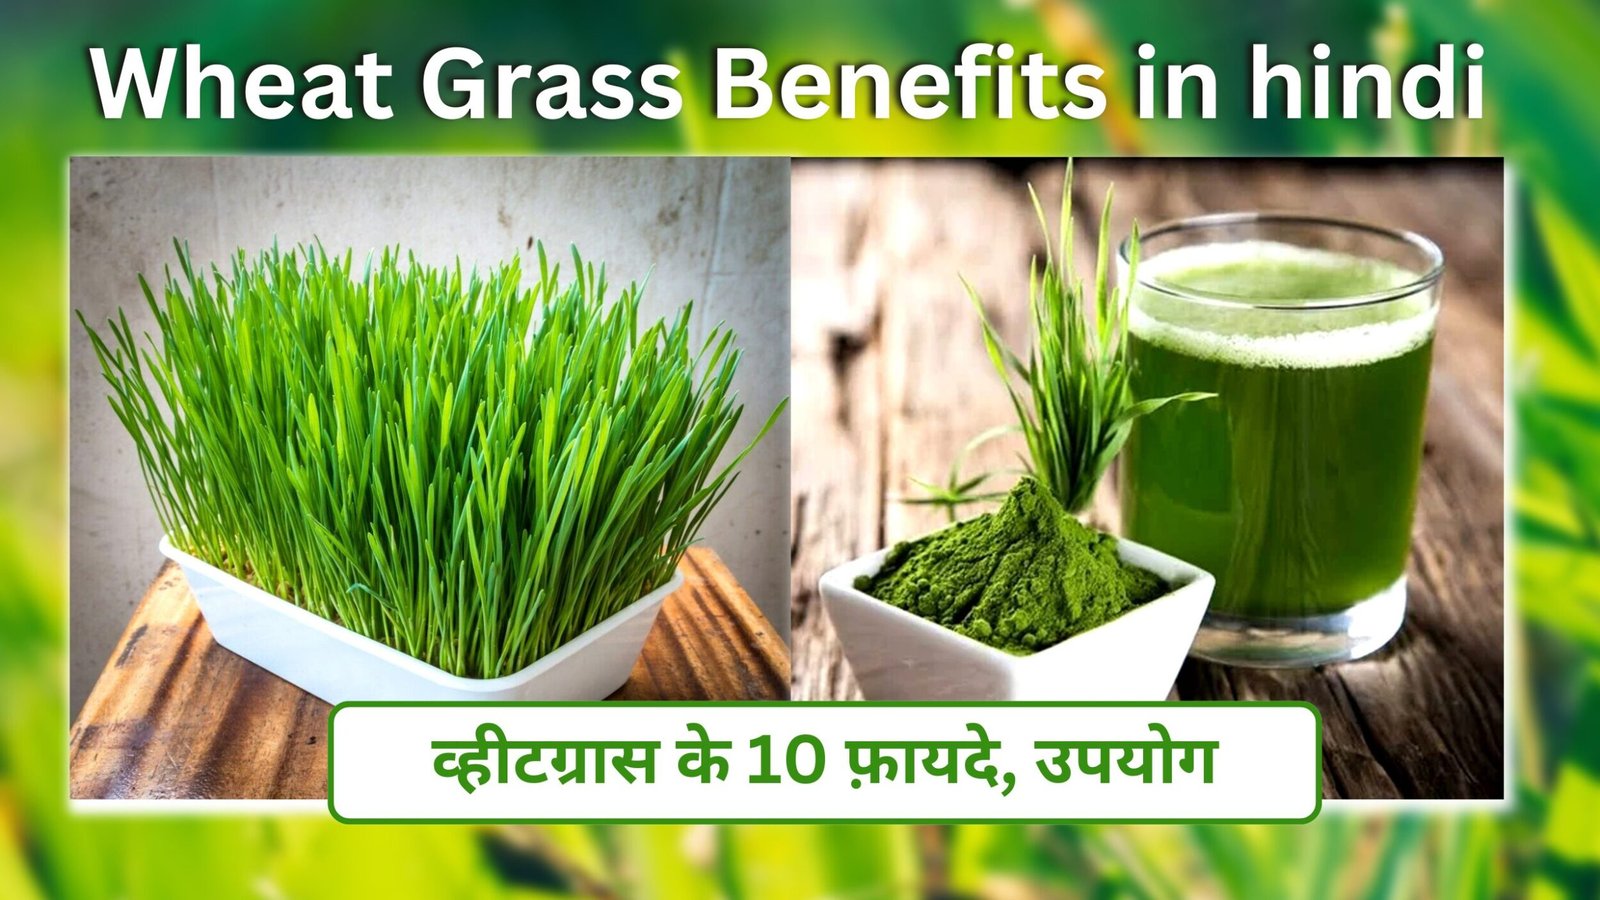 Wheat Grass Benefits In Hindi | व्हीटग्रास के 10 फ़ायदे, उपयोग